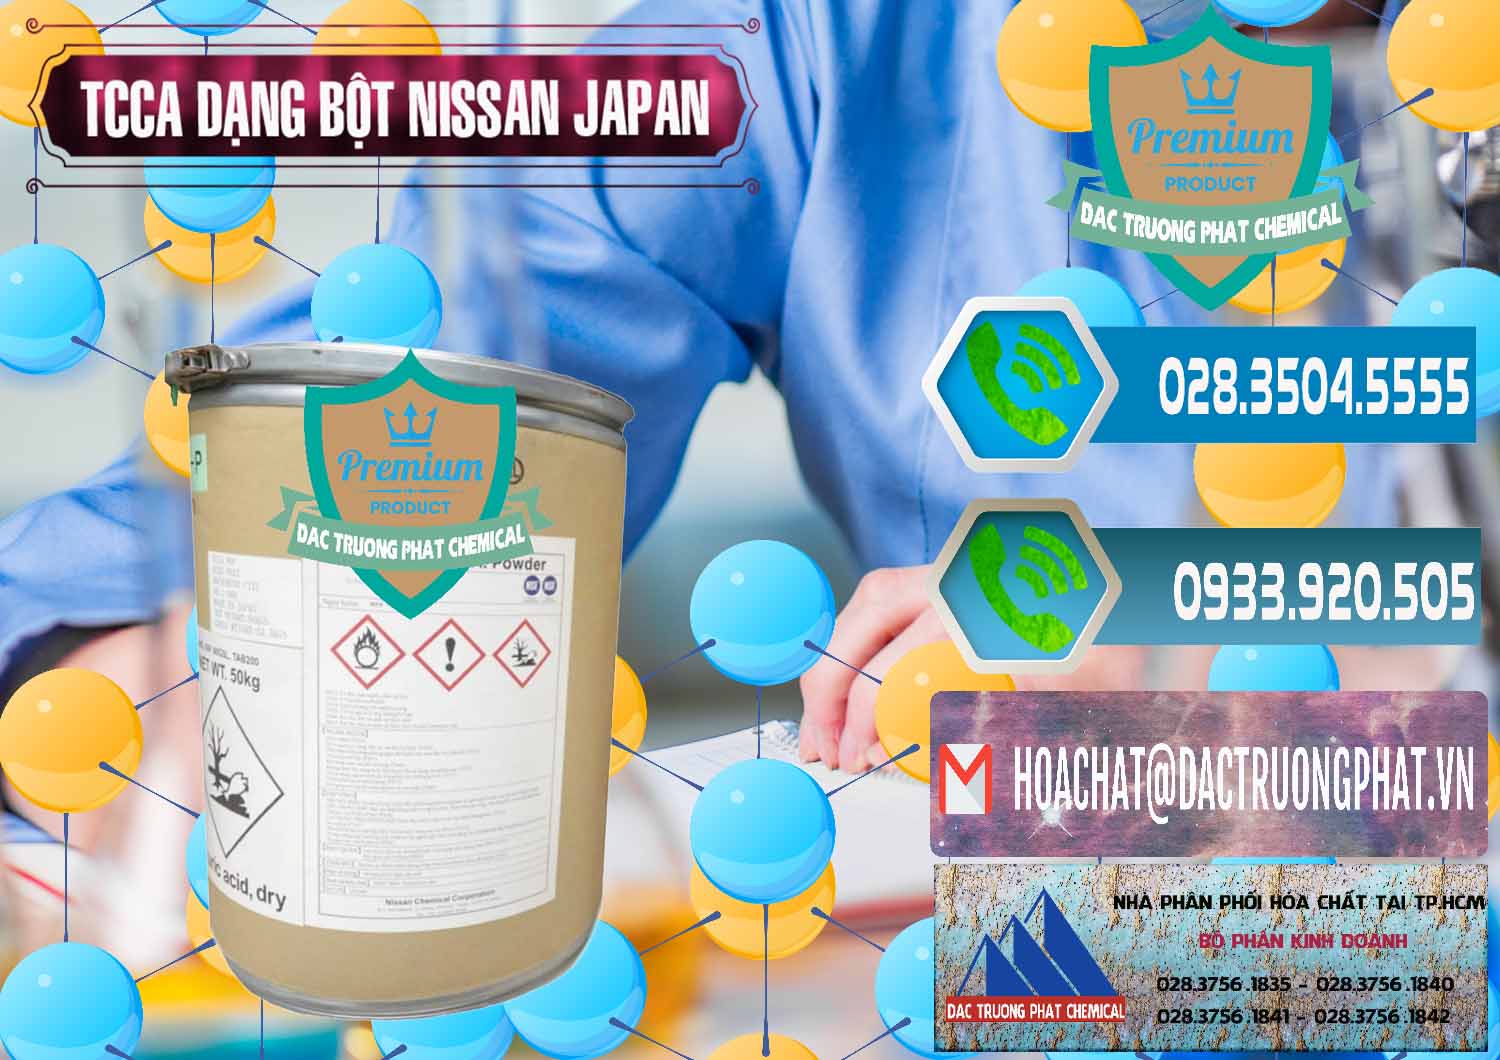 Cty chuyên bán _ cung cấp TCCA - Acid Trichloroisocyanuric 90% Dạng Bột Nissan Nhật Bản Japan - 0375 - Công ty chuyên kinh doanh ( phân phối ) hóa chất tại TP.HCM - congtyhoachat.net